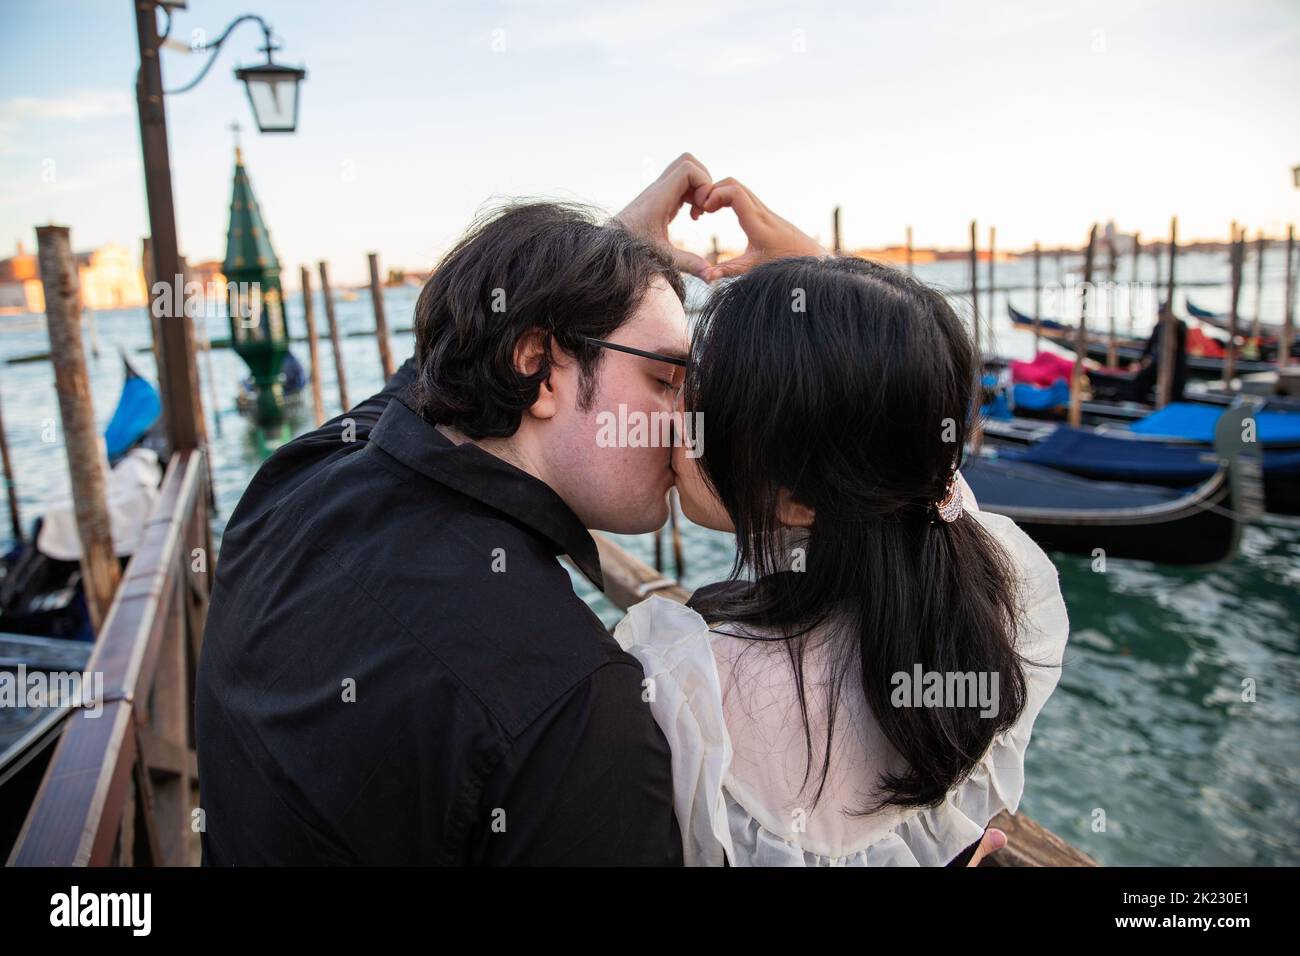 Ein paar Liebende küssen in Venedig während des Sonnenuntergangs und sie machen ein Herz mit ihren Händen, ein romantischer Moment Stockfoto